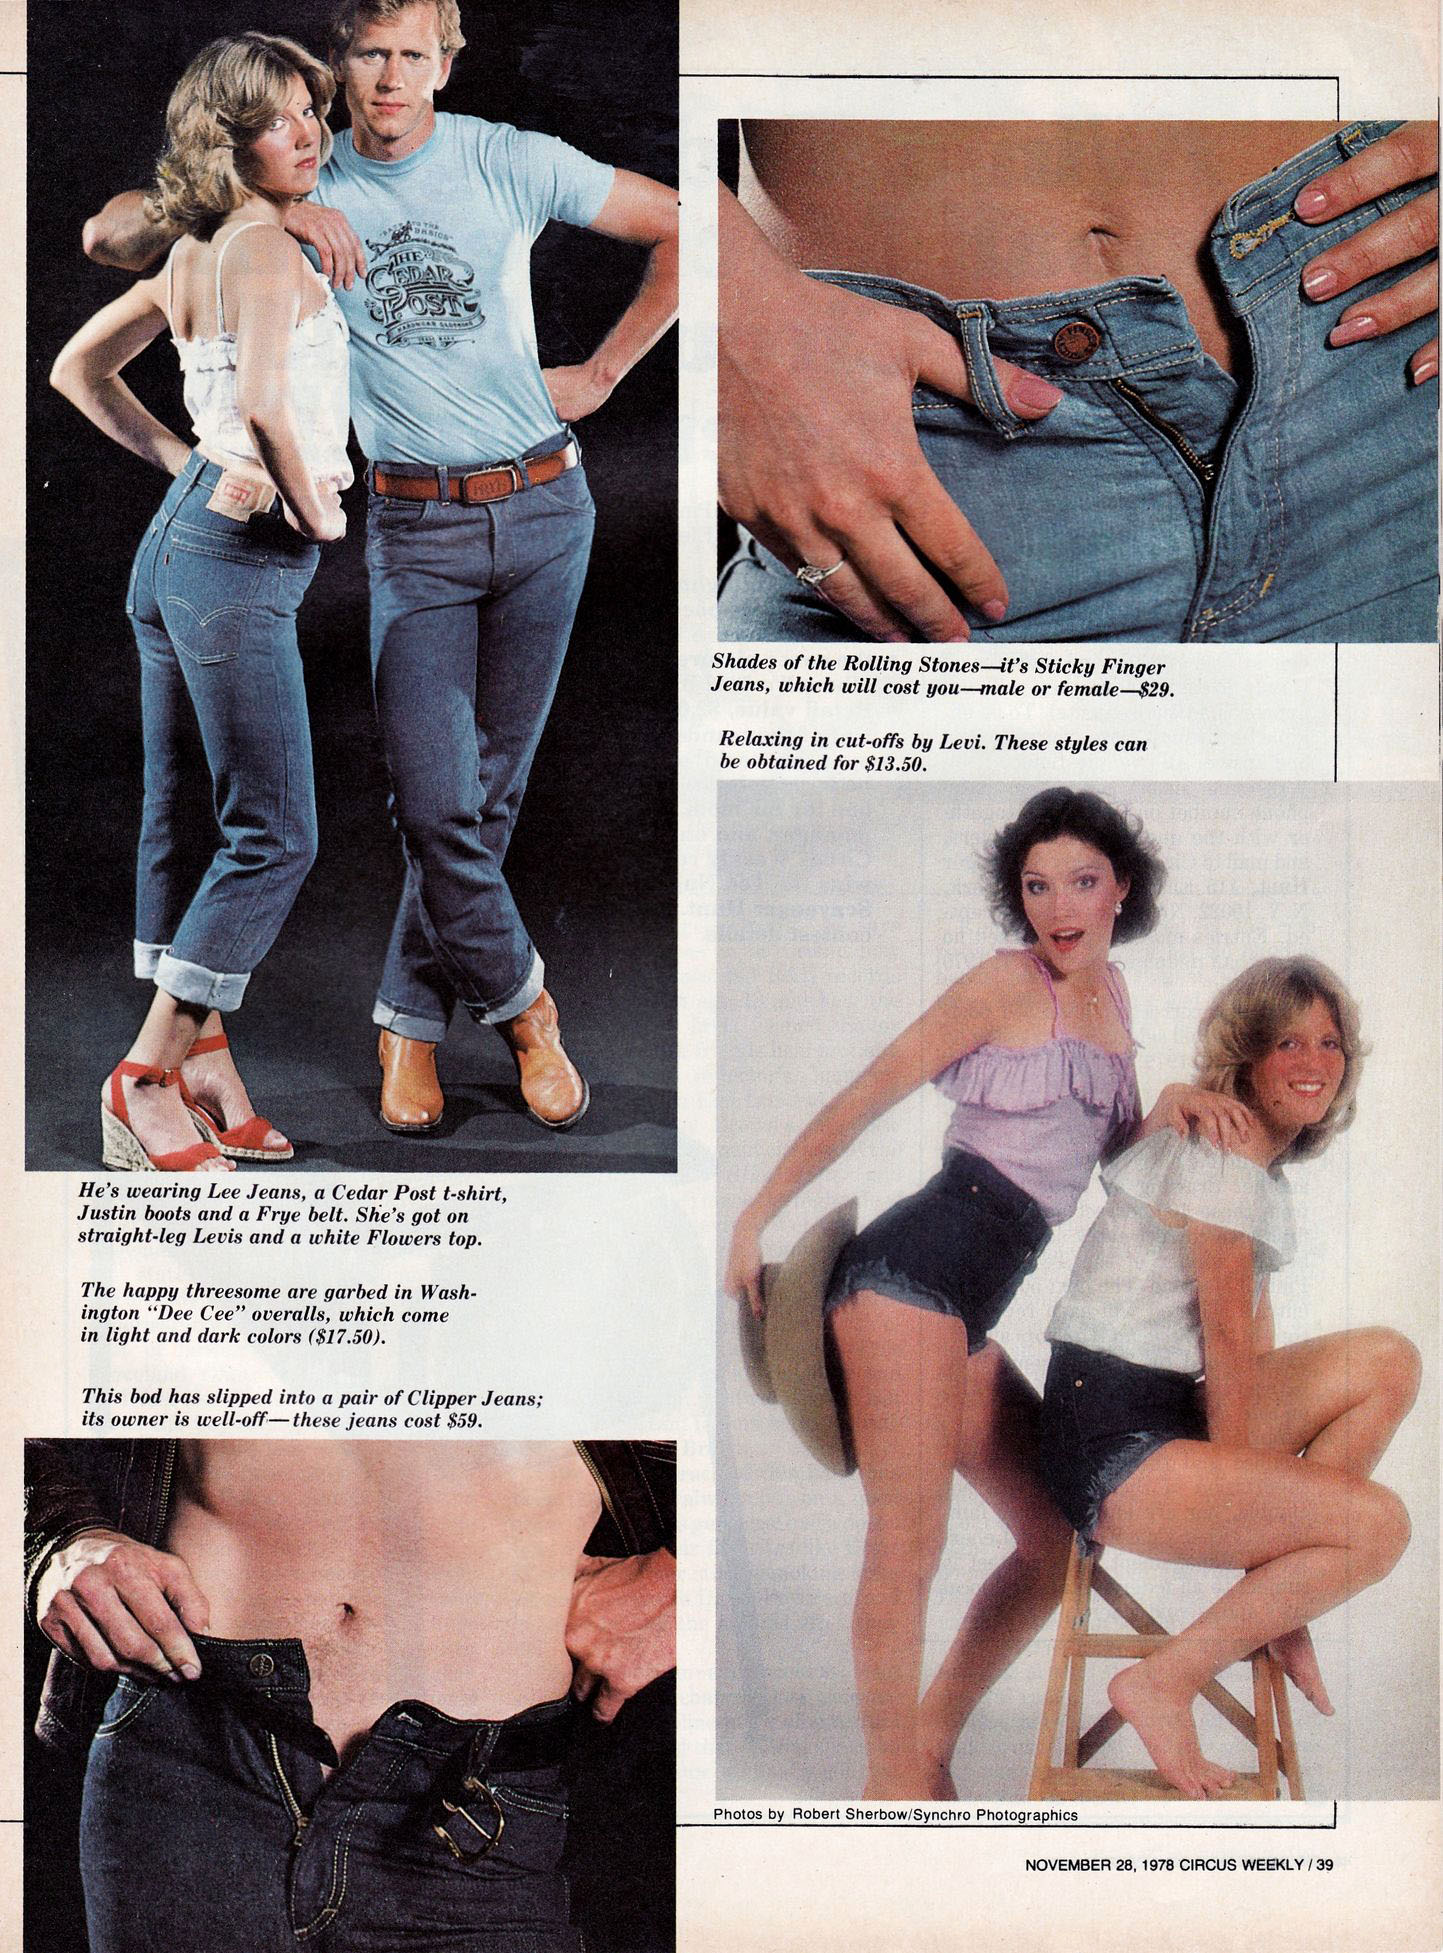 80s designer jeans brands